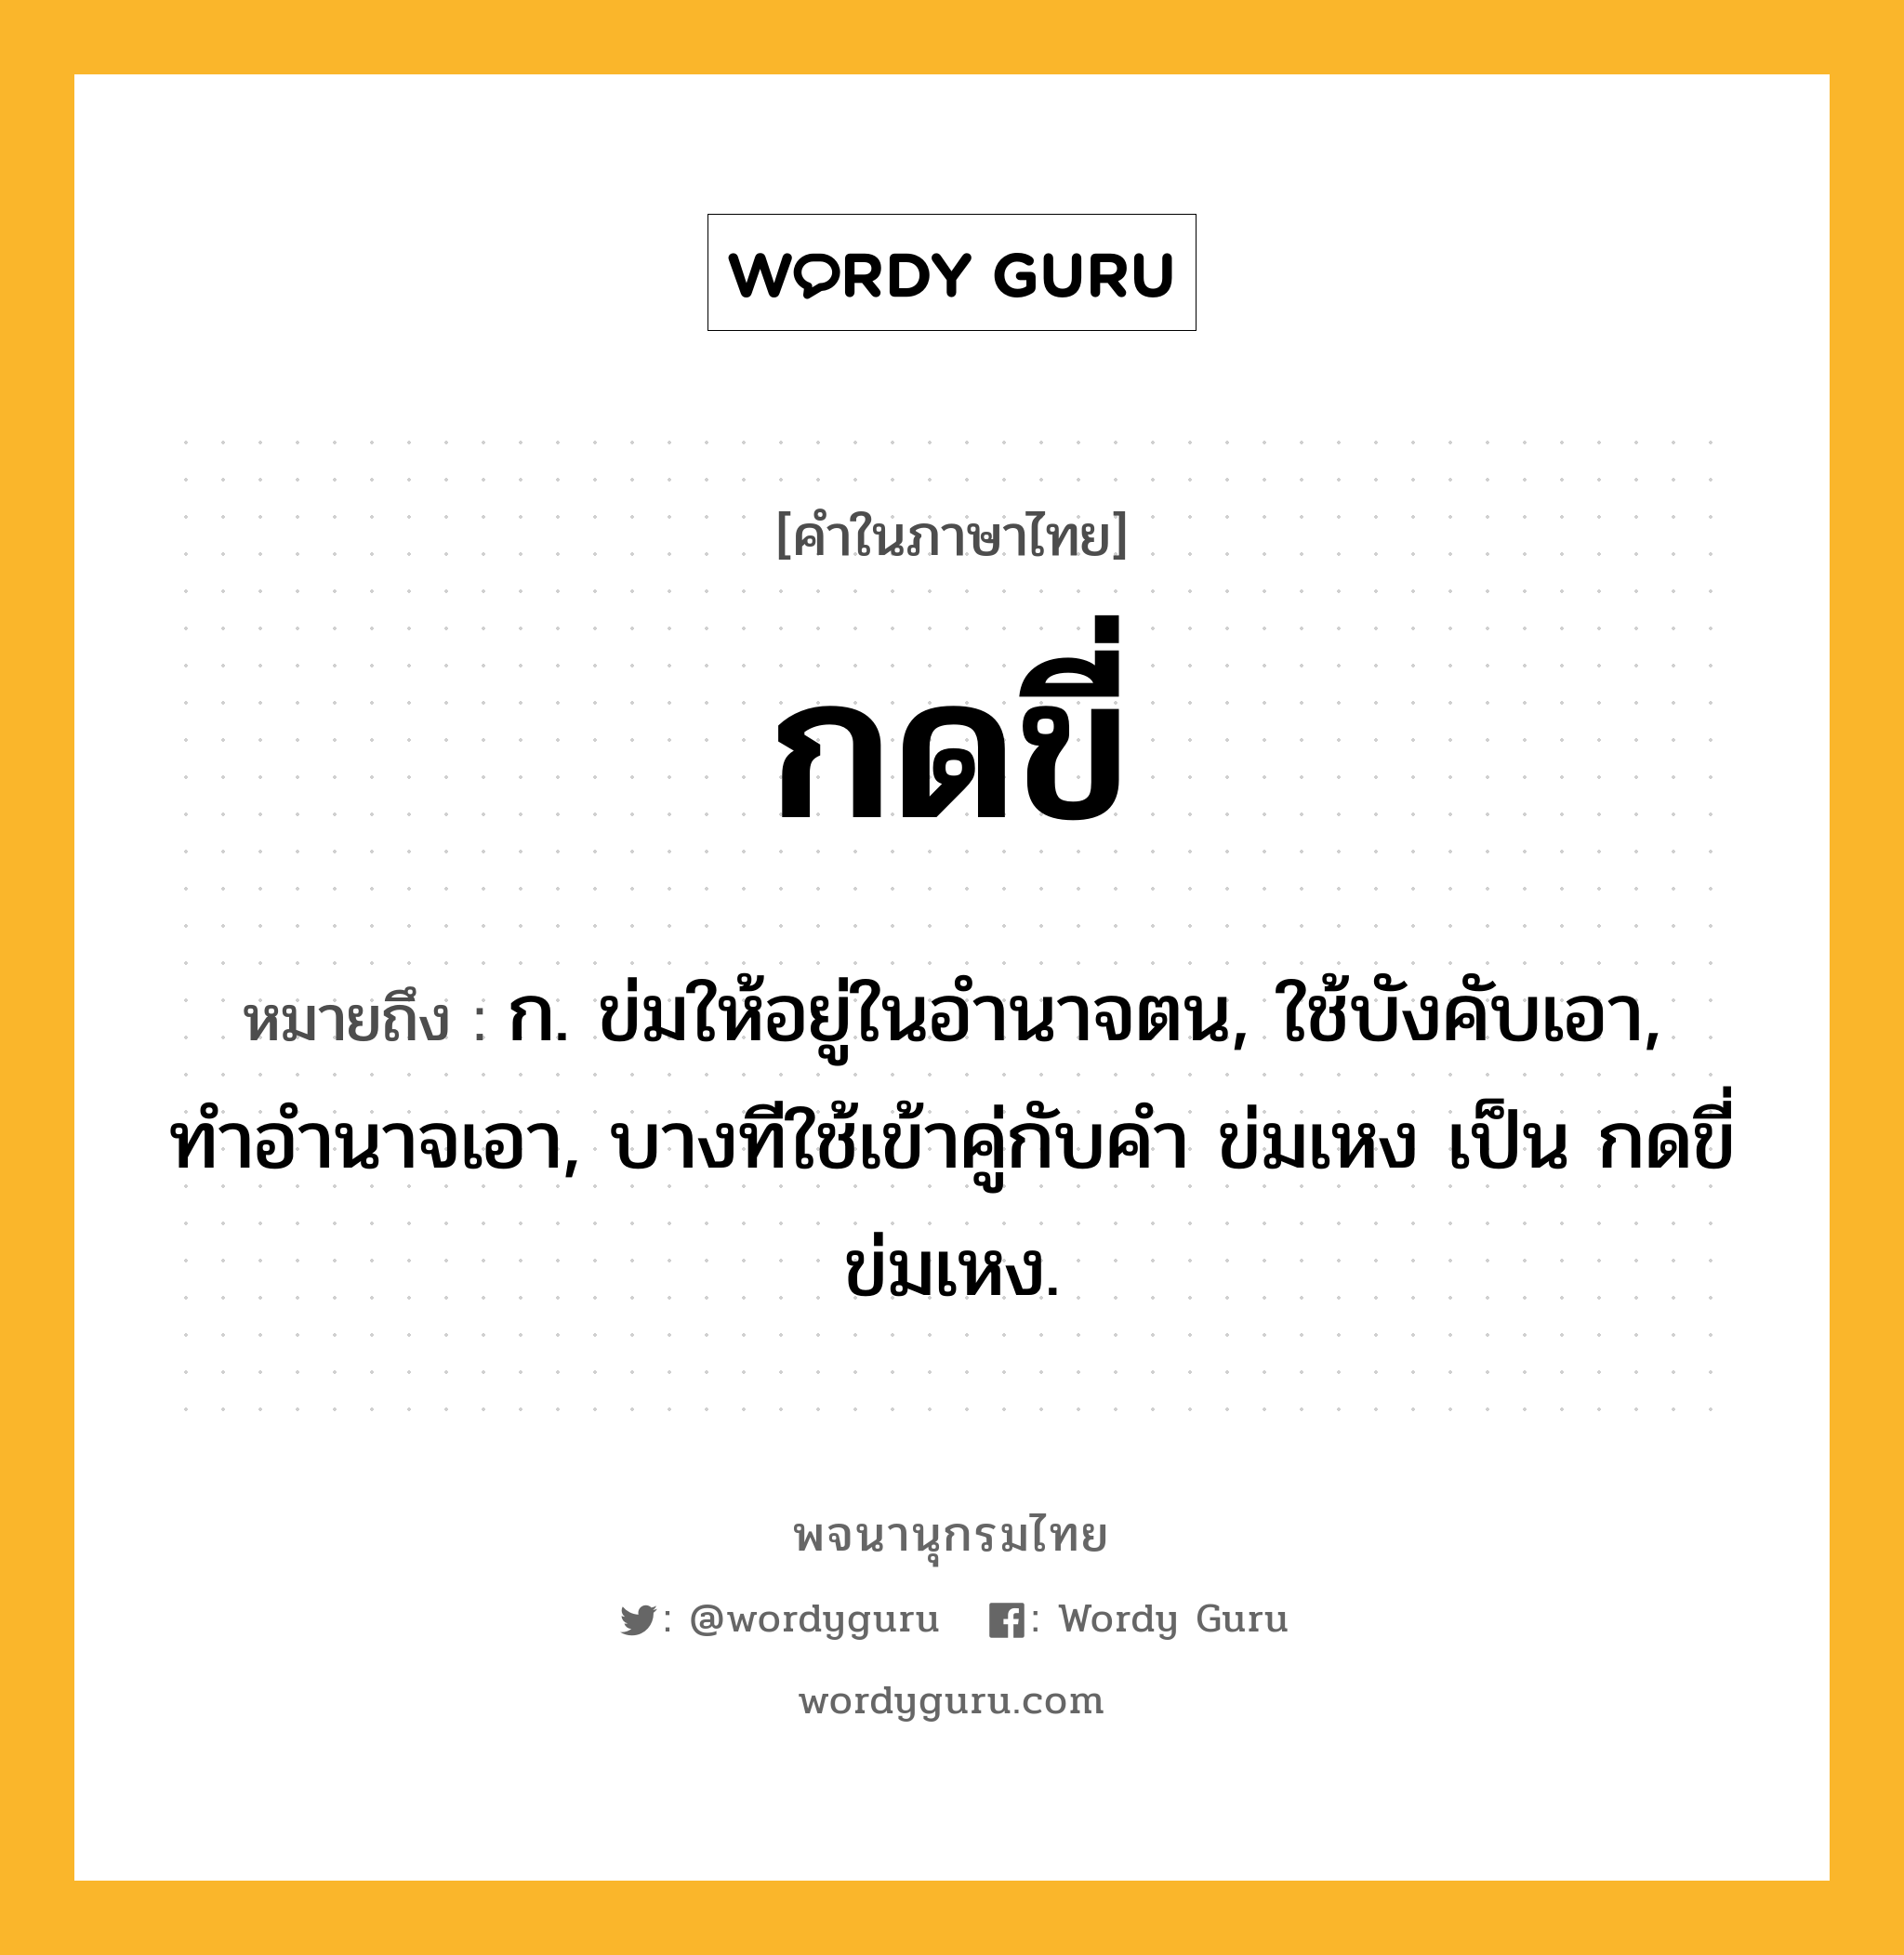 กดขี่ หมายถึงอะไร?, คำในภาษาไทย กดขี่ หมายถึง ก. ข่มให้อยู่ในอํานาจตน, ใช้บังคับเอา, ทําอํานาจเอา, บางทีใช้เข้าคู่กับคำ ข่มเหง เป็น กดขี่ข่มเหง.